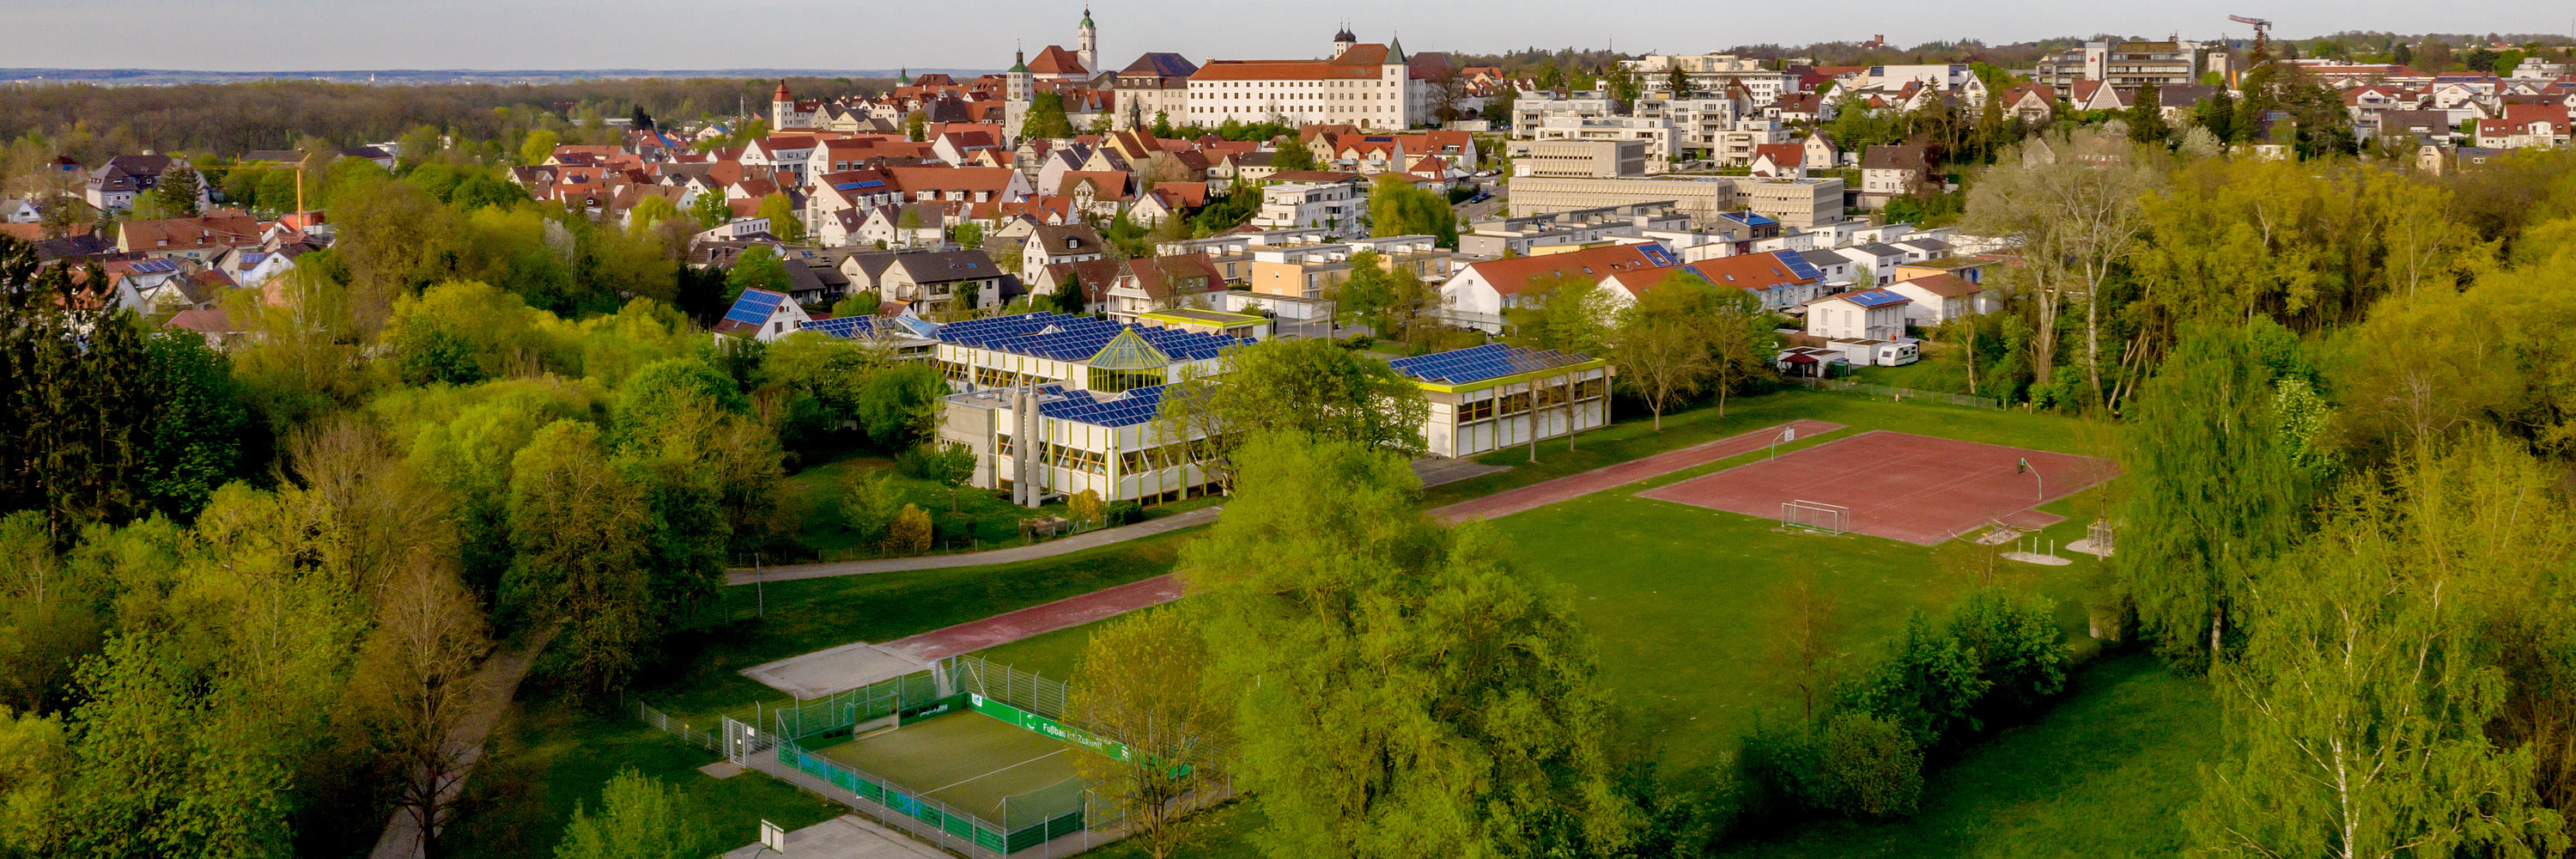 Solaranlage in Günzburg. Foto: Philipp Röger für die Stadt Günzburg